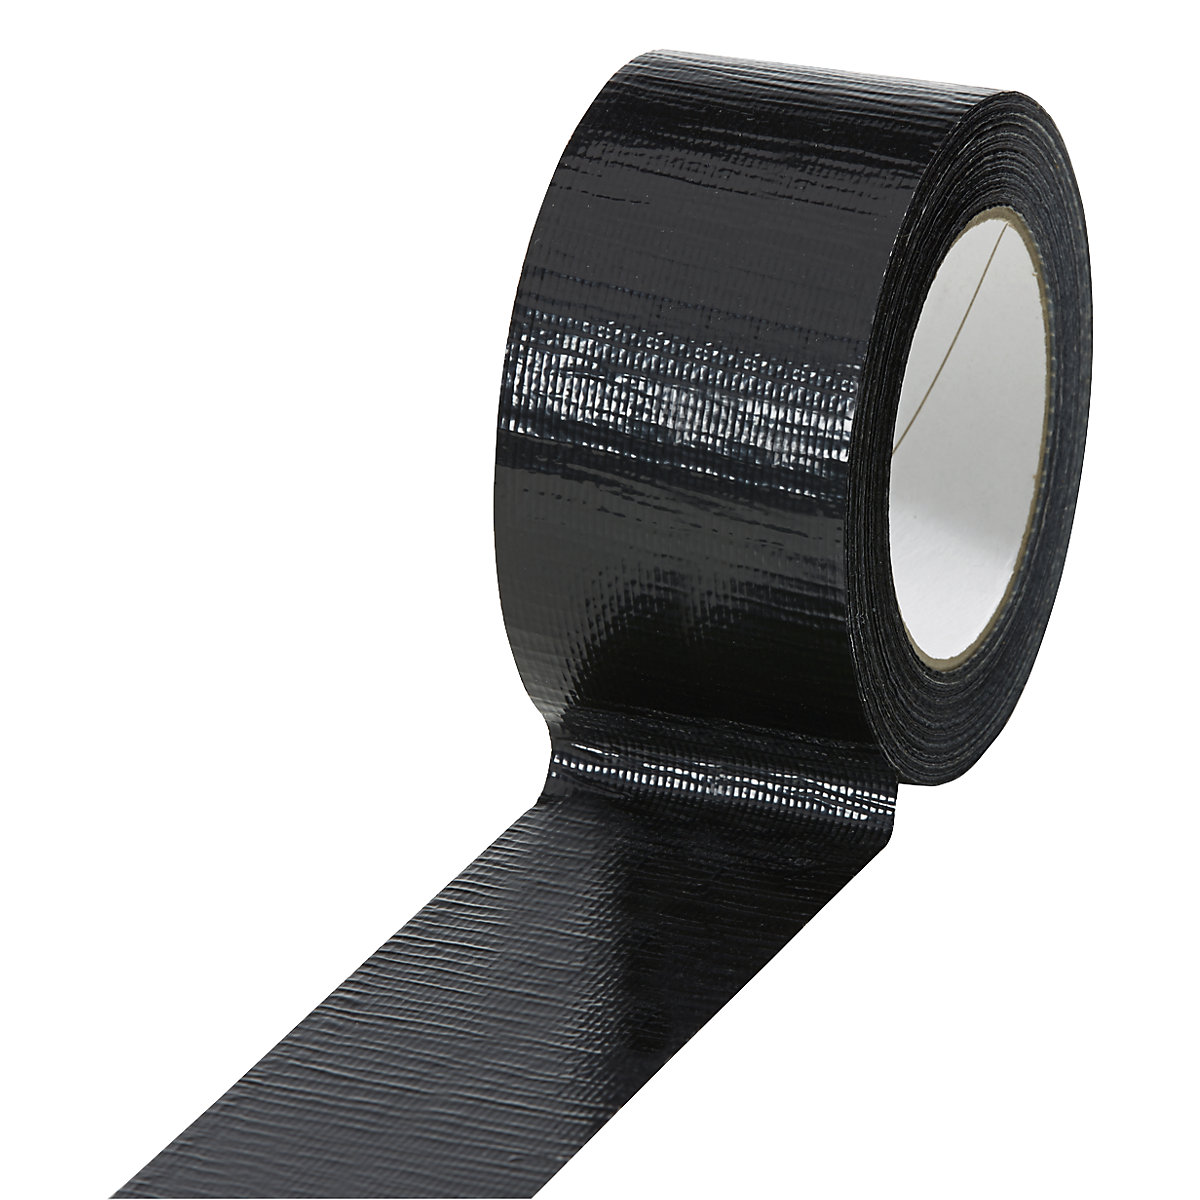 Traka od tkanine, u različitim bojama, pak. 18 rola, u crnoj boji, širina trake 50 mm-17